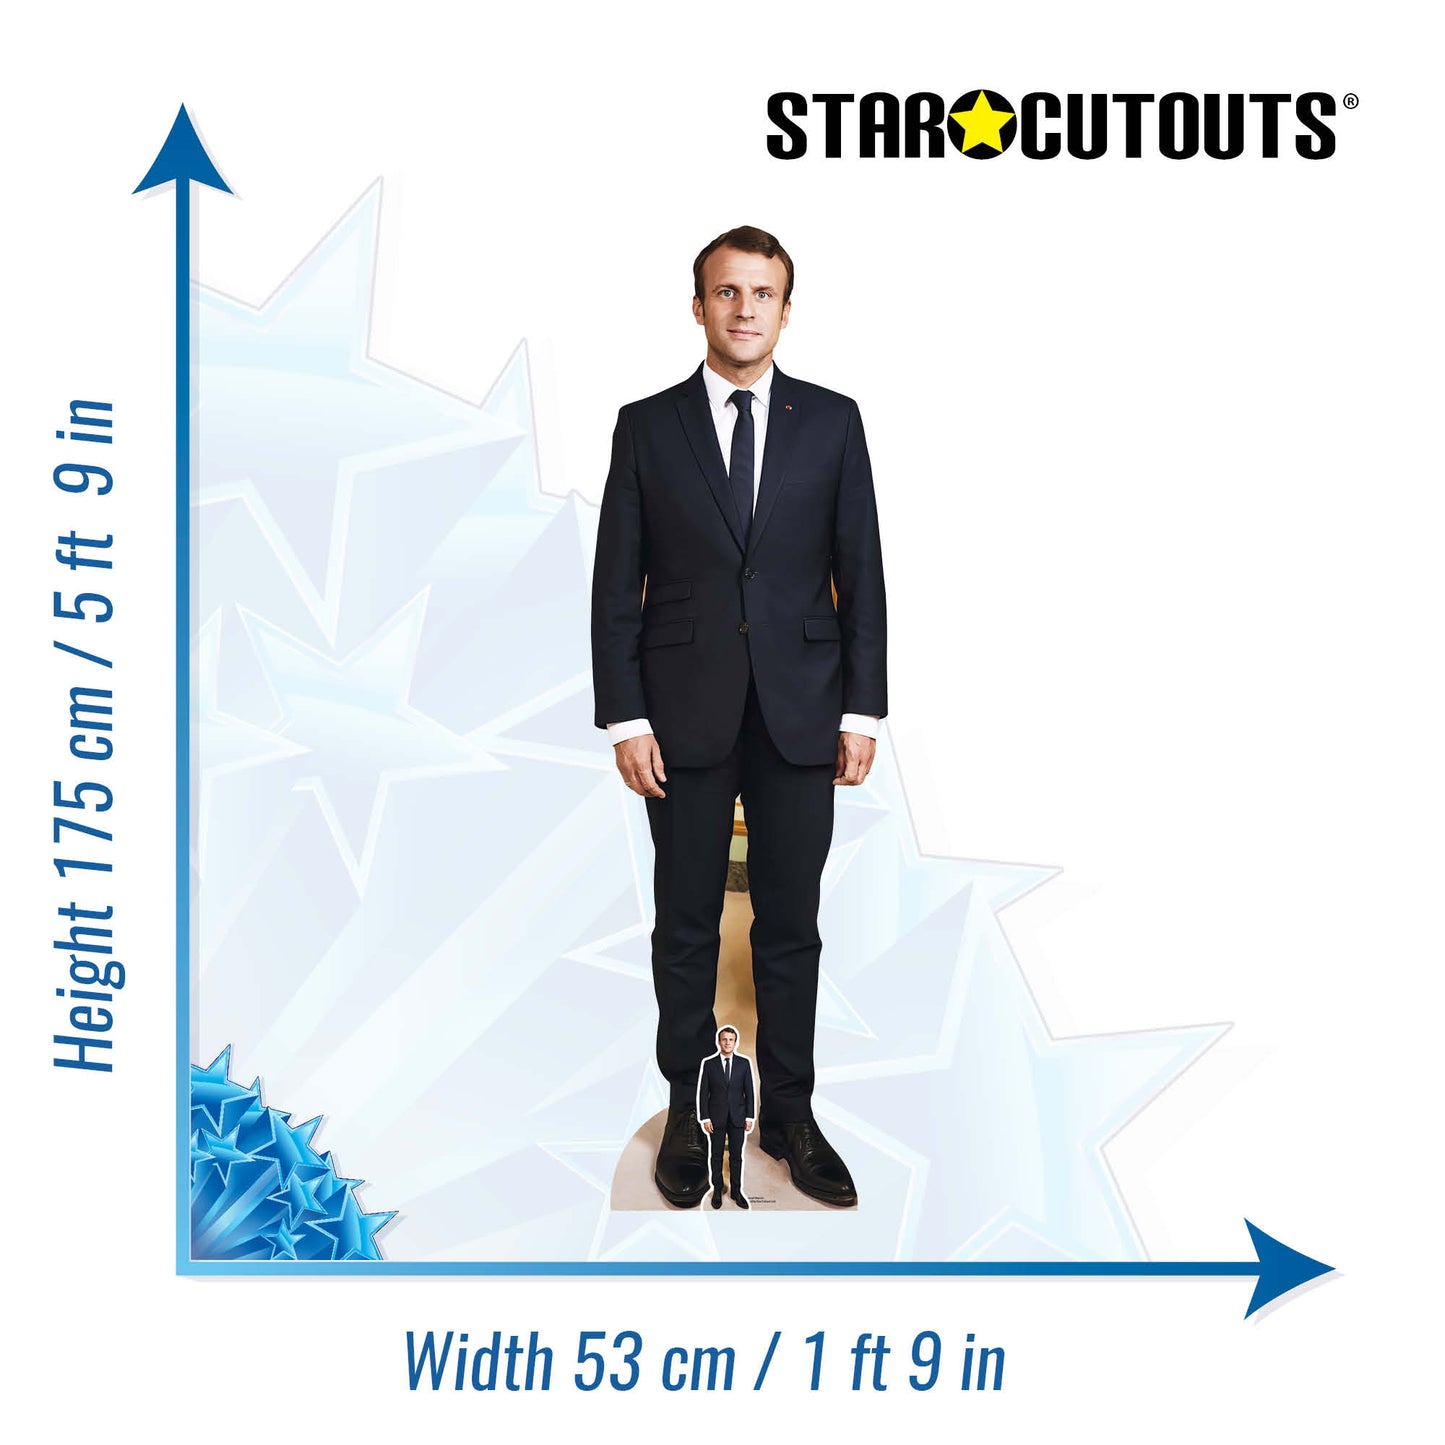 French President Emmanuel Macron Cardboard Cutout